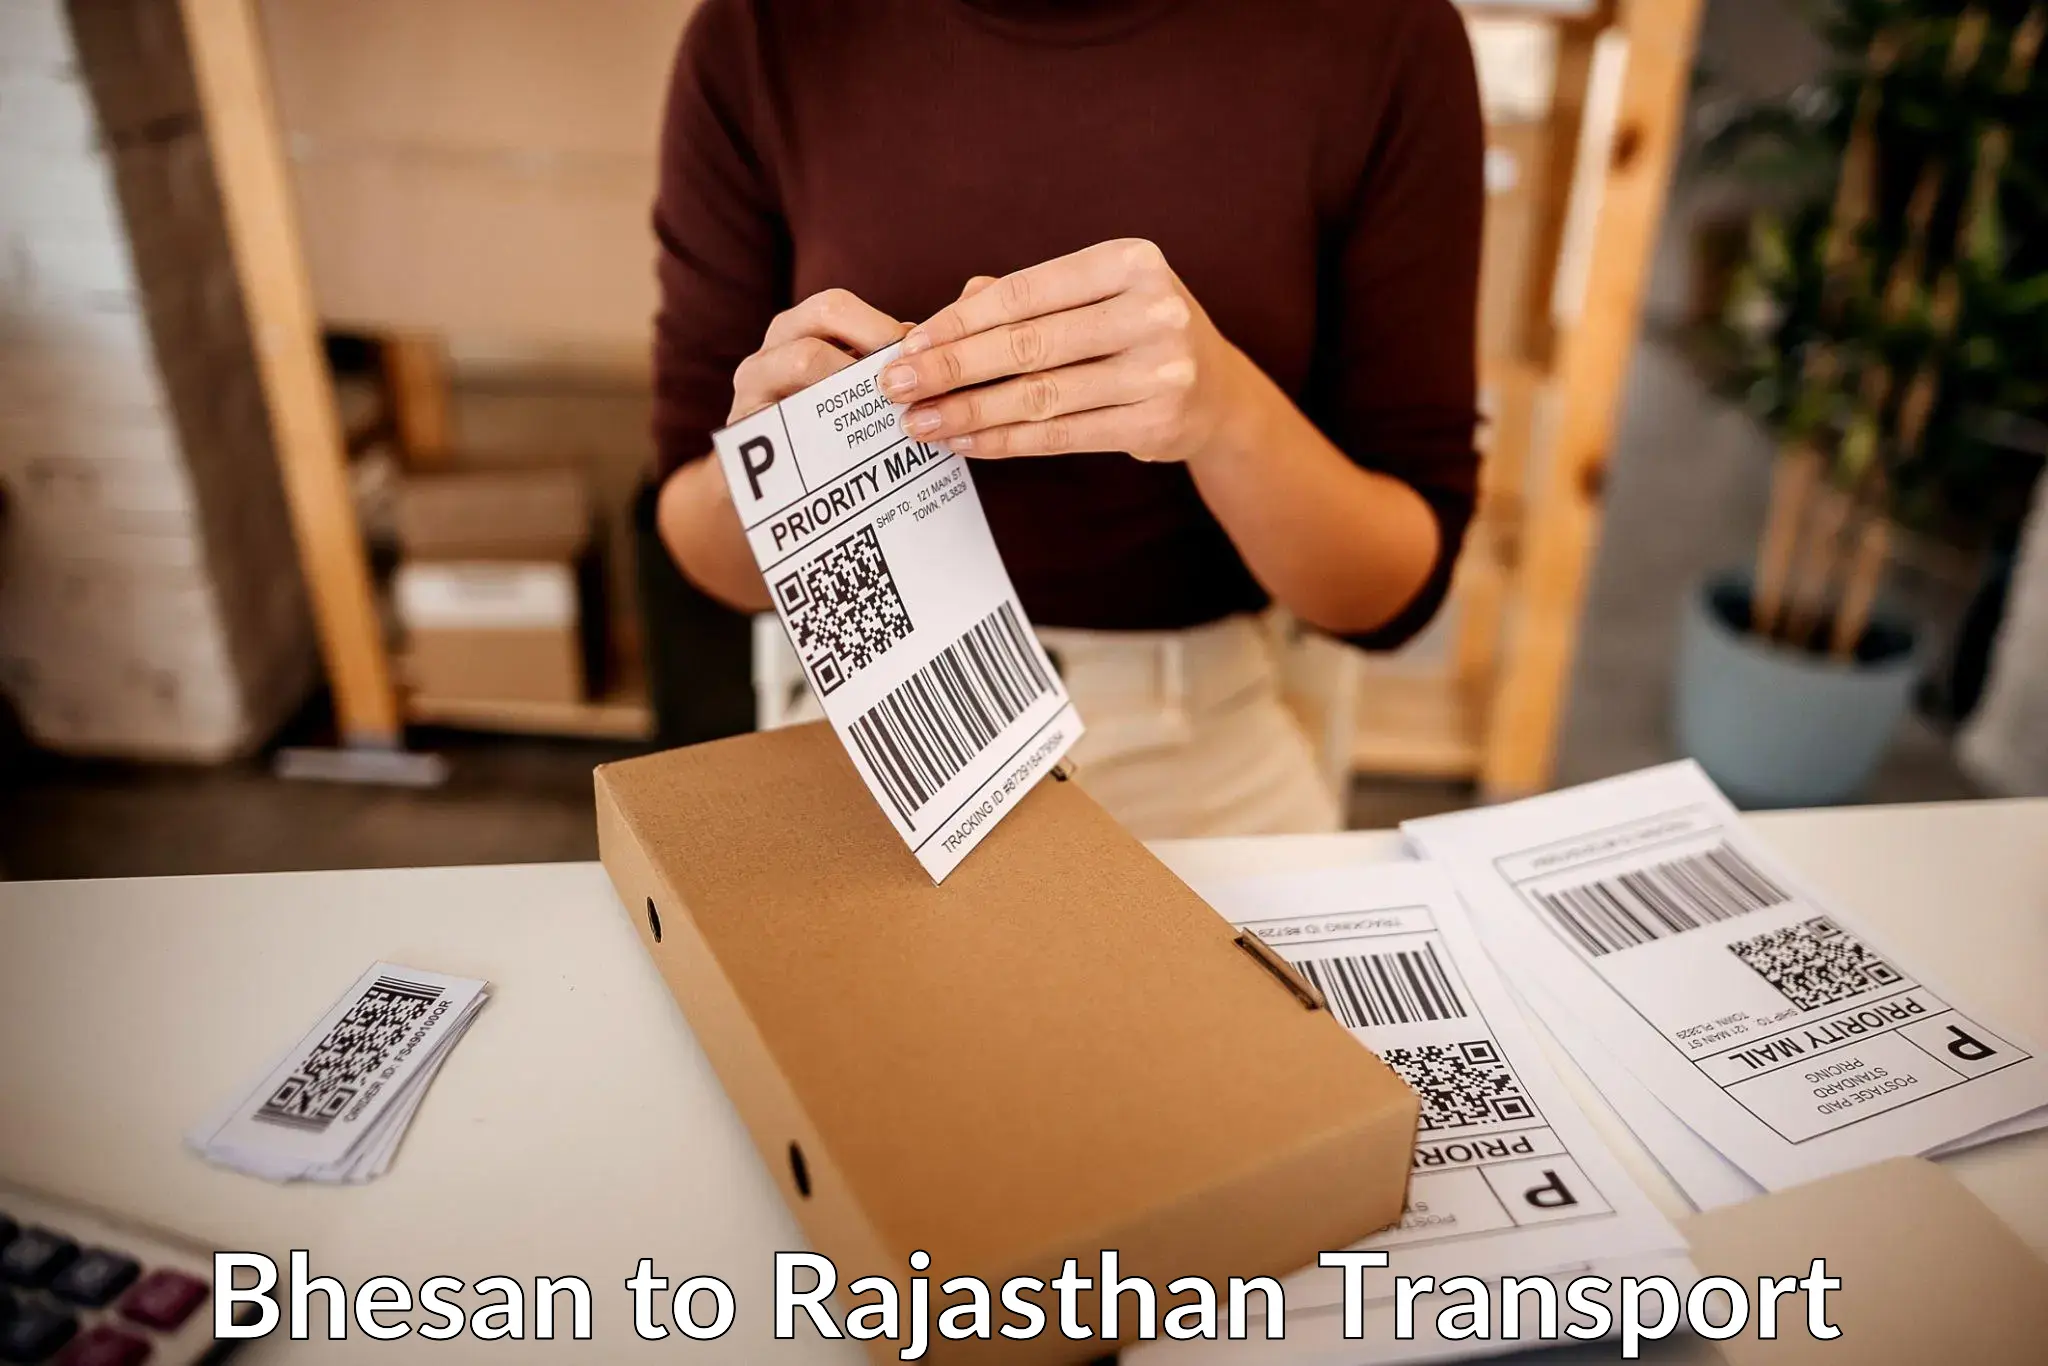 Transport in sharing in Bhesan to NIT Jaipur